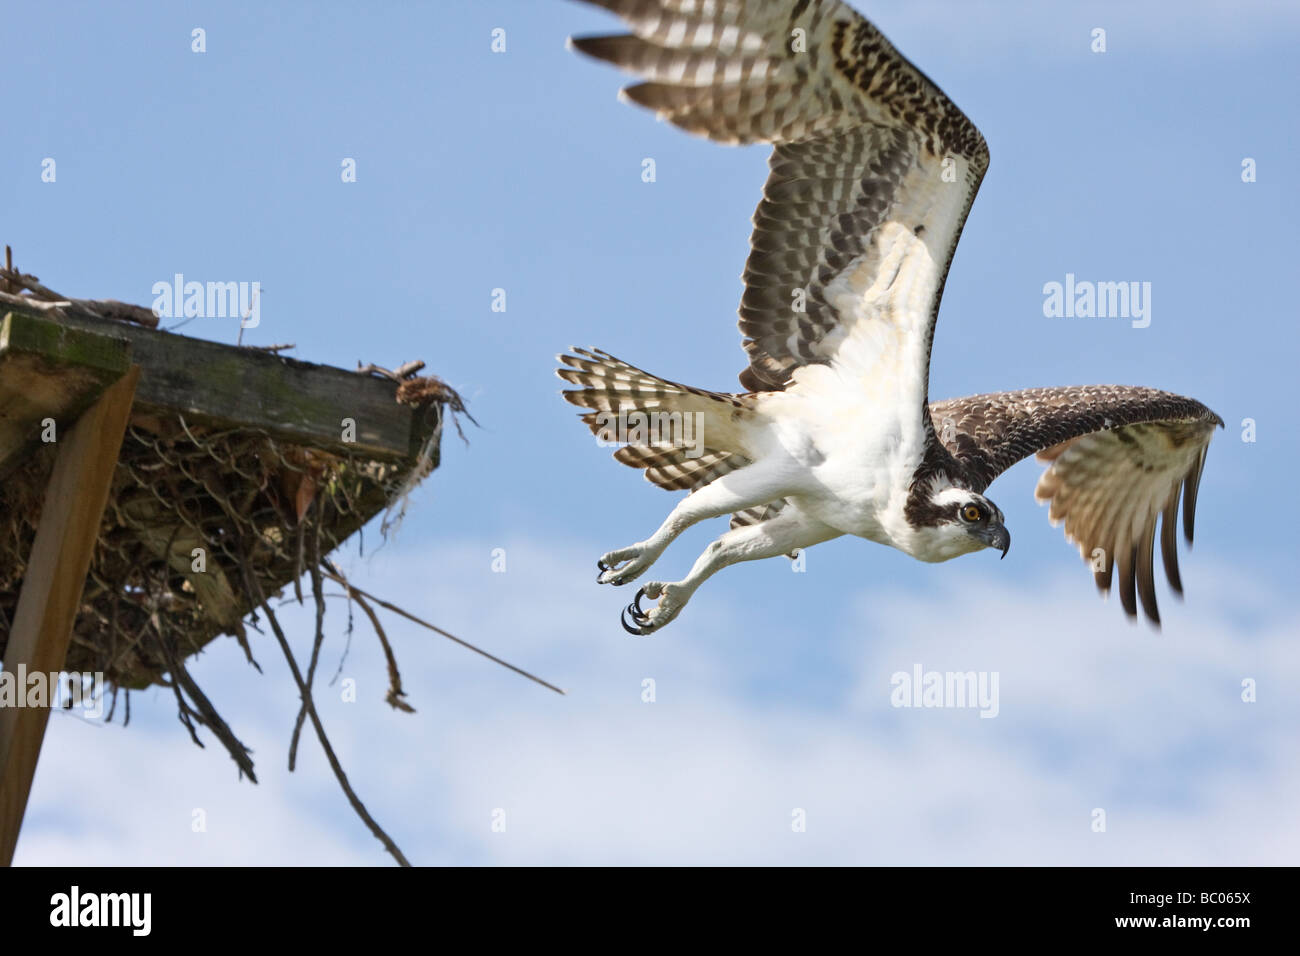 Osprey Flying from nesting platform Stock Photo